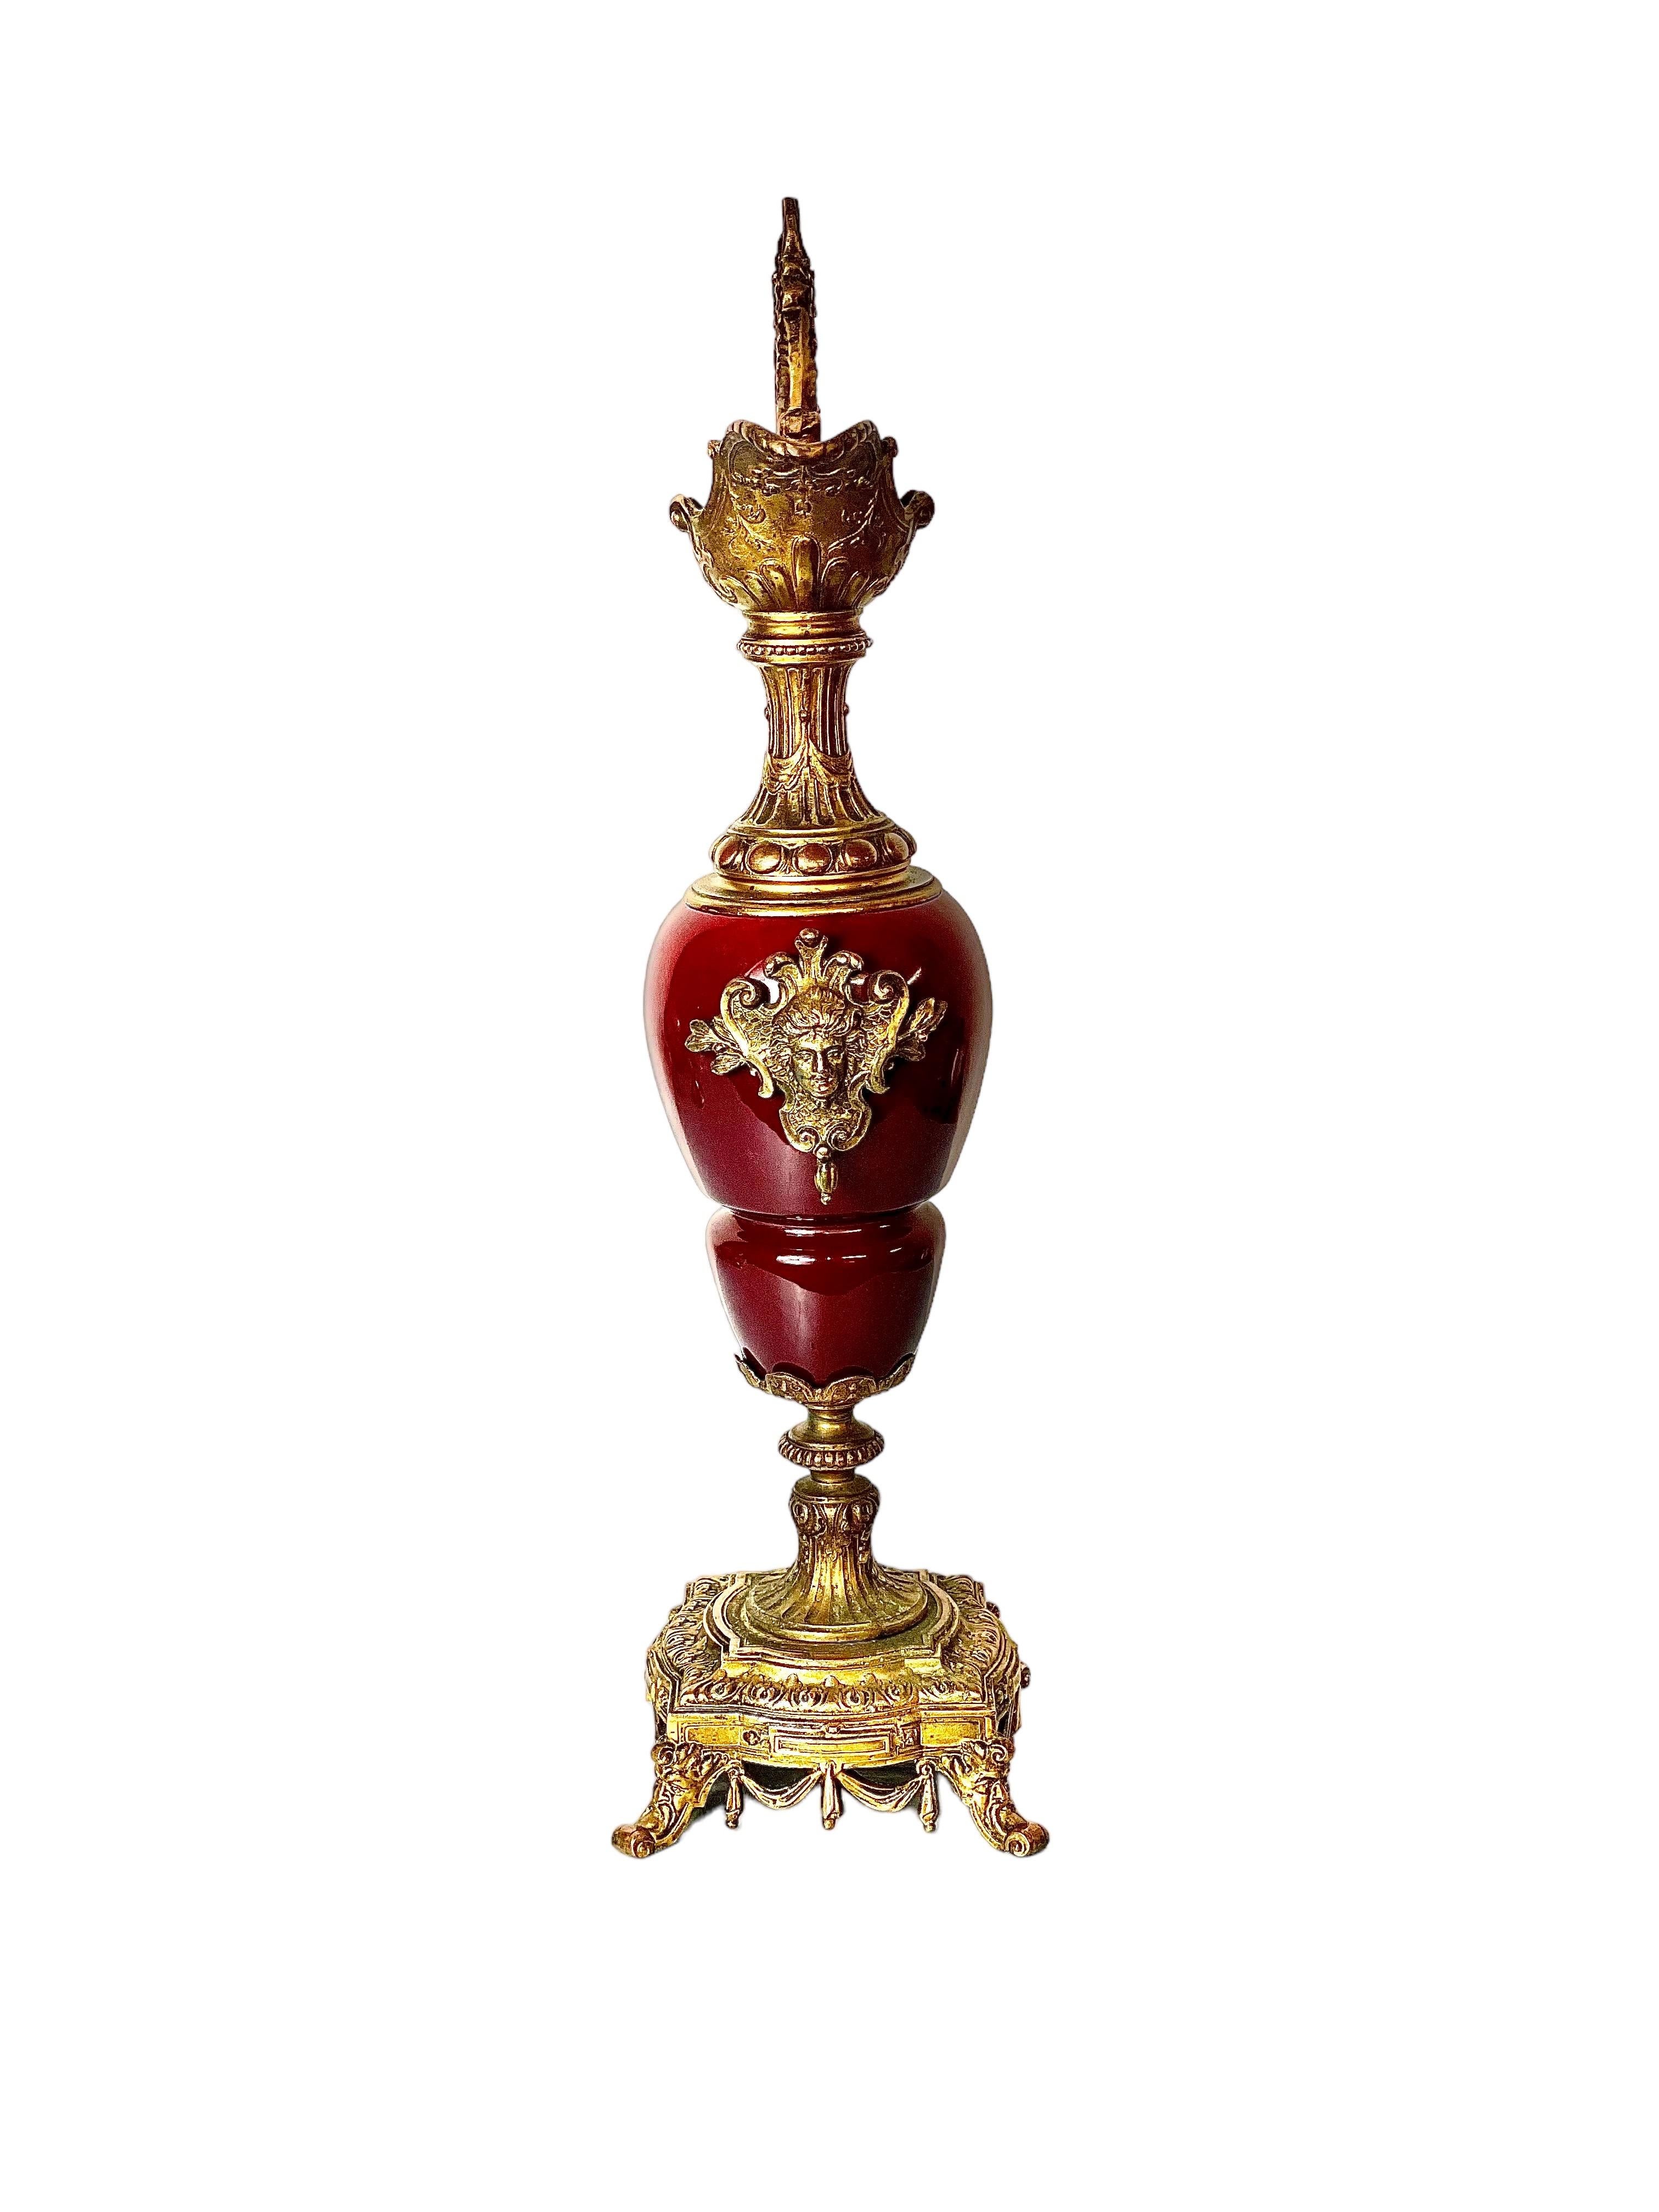 Eine sehr verzierte französische antike Urne mit einem glänzenden, roten Keramikkrugkörper und vergoldetem Bronzefuß und Verzierungen, die auf den Beginn des 20. Jahrhunderts datiert wird und dem Stil der Renaissance nachempfunden ist. Dieses